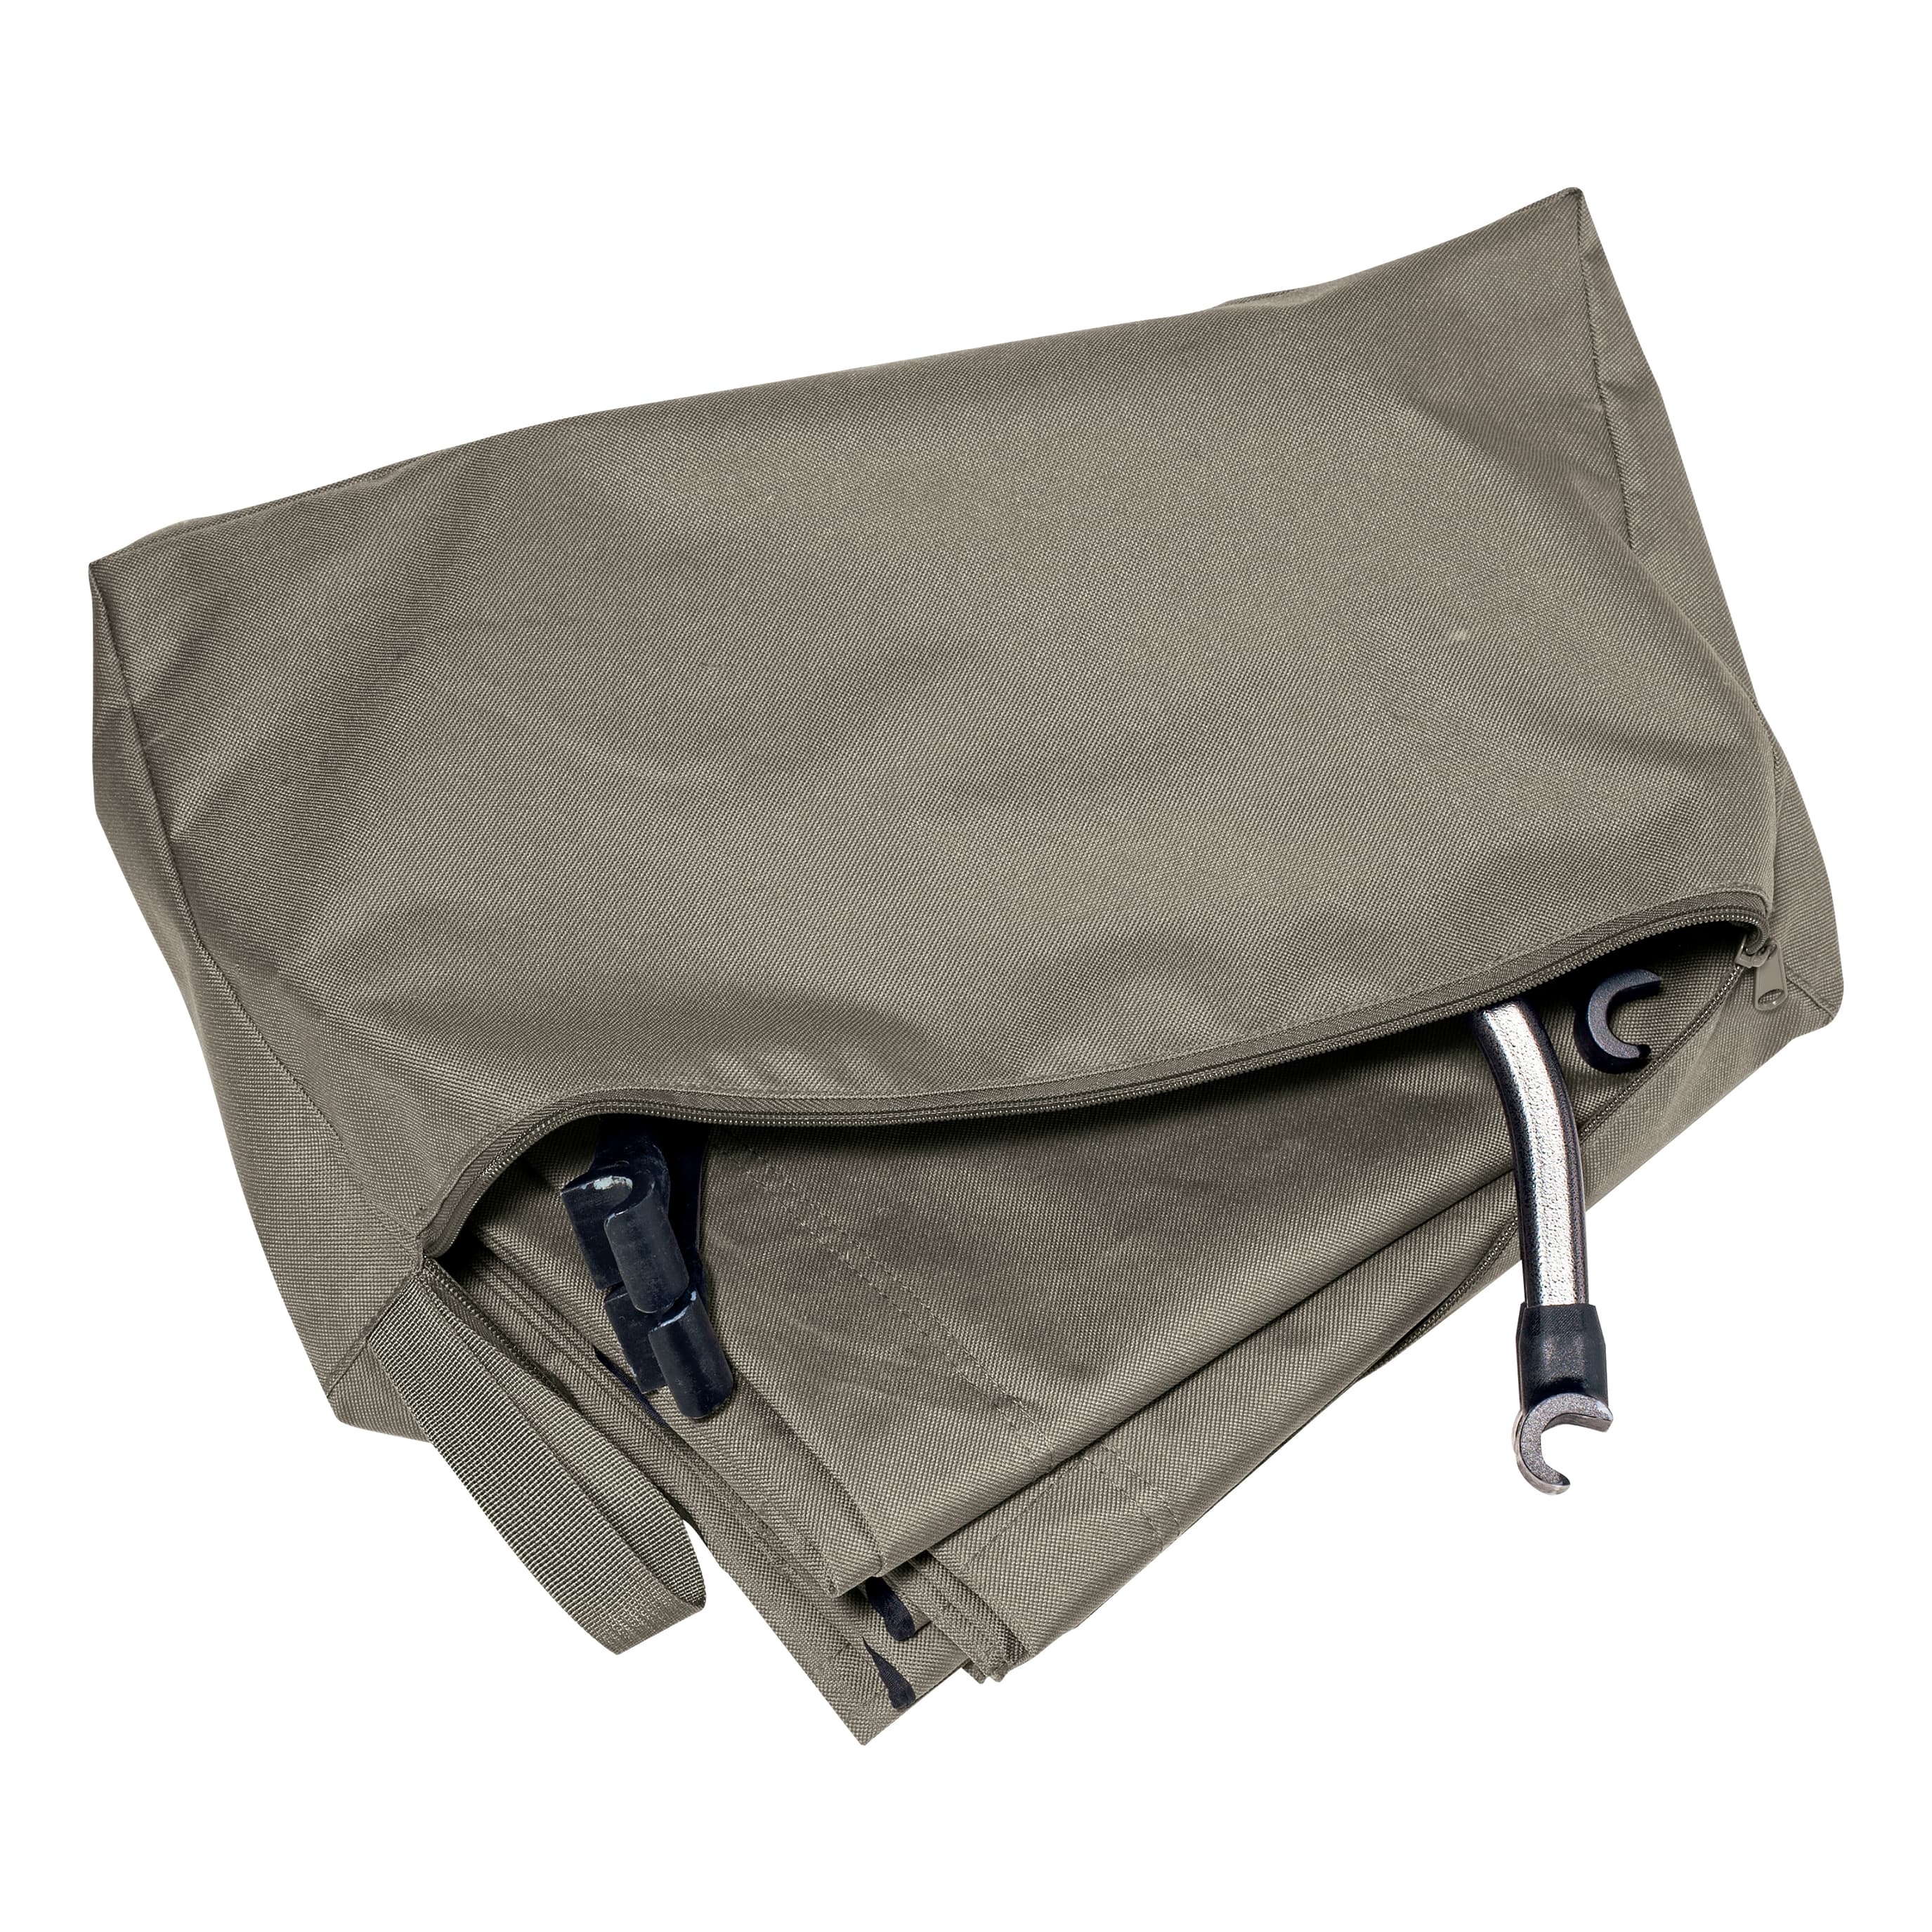 Cabela's Lightweight Cot - Storage Bag